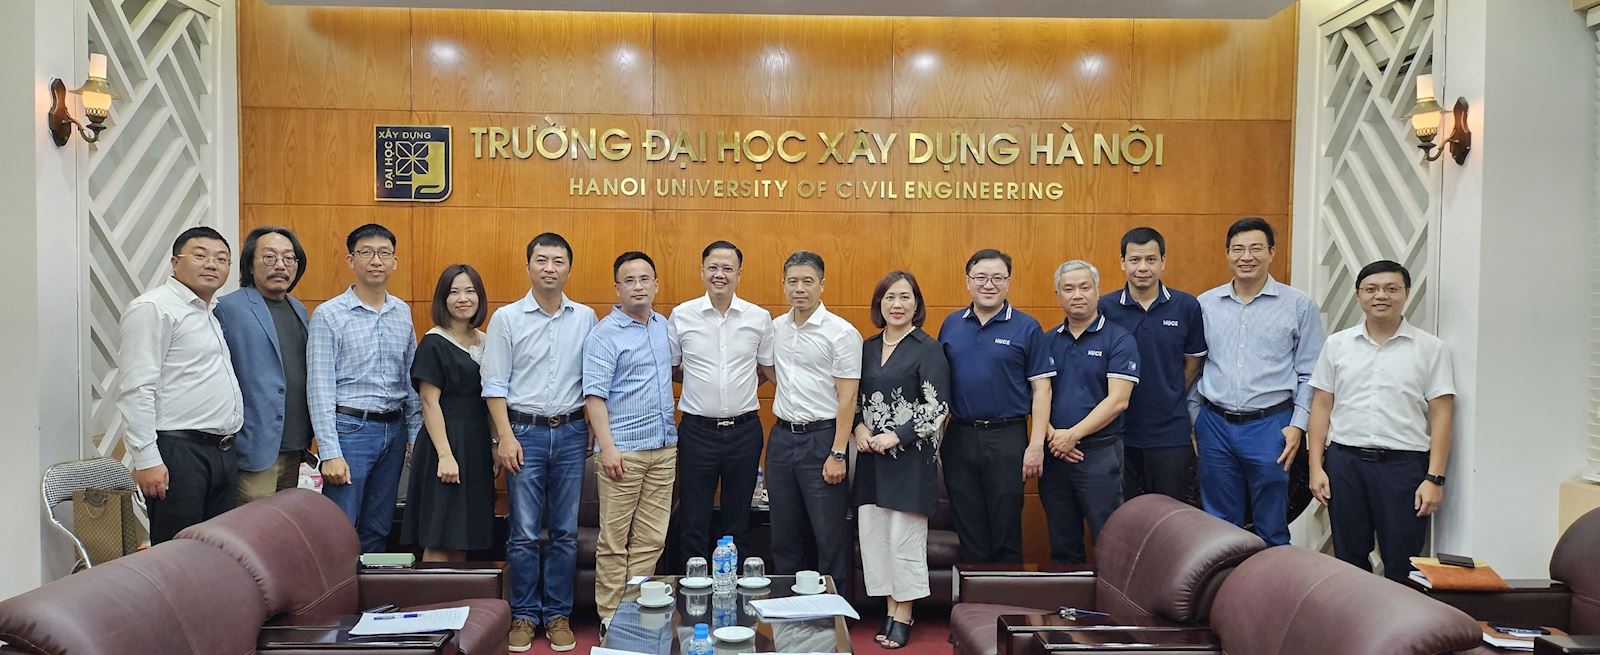 Trường Đại học Xây dựng Hà Nội trao đổi, làm việc với Công ty TNHH Phát triển Xây dựng Việt Nam Kiến Hưng, Trung Quốc